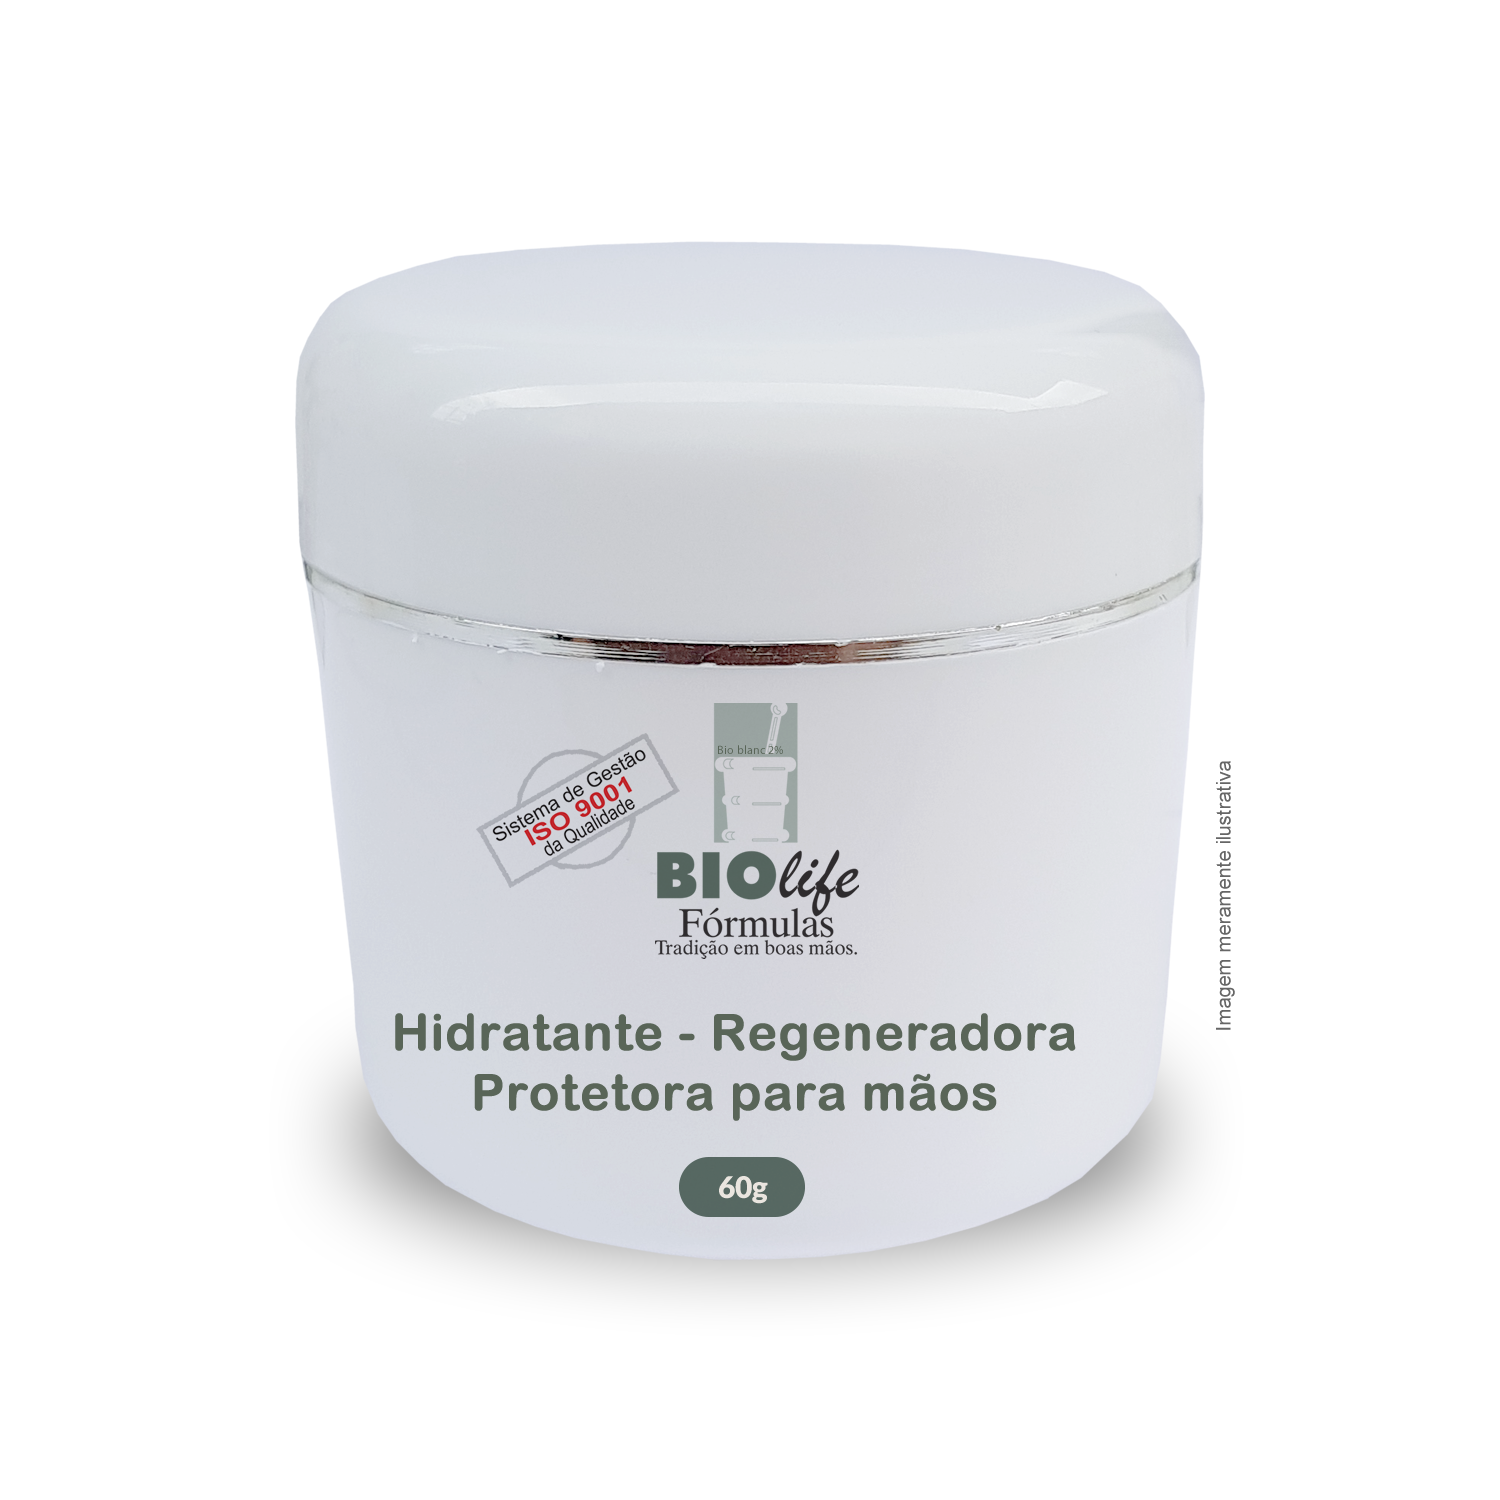 Hidratante - Regeneradora - Protetora para mãos - BioLife